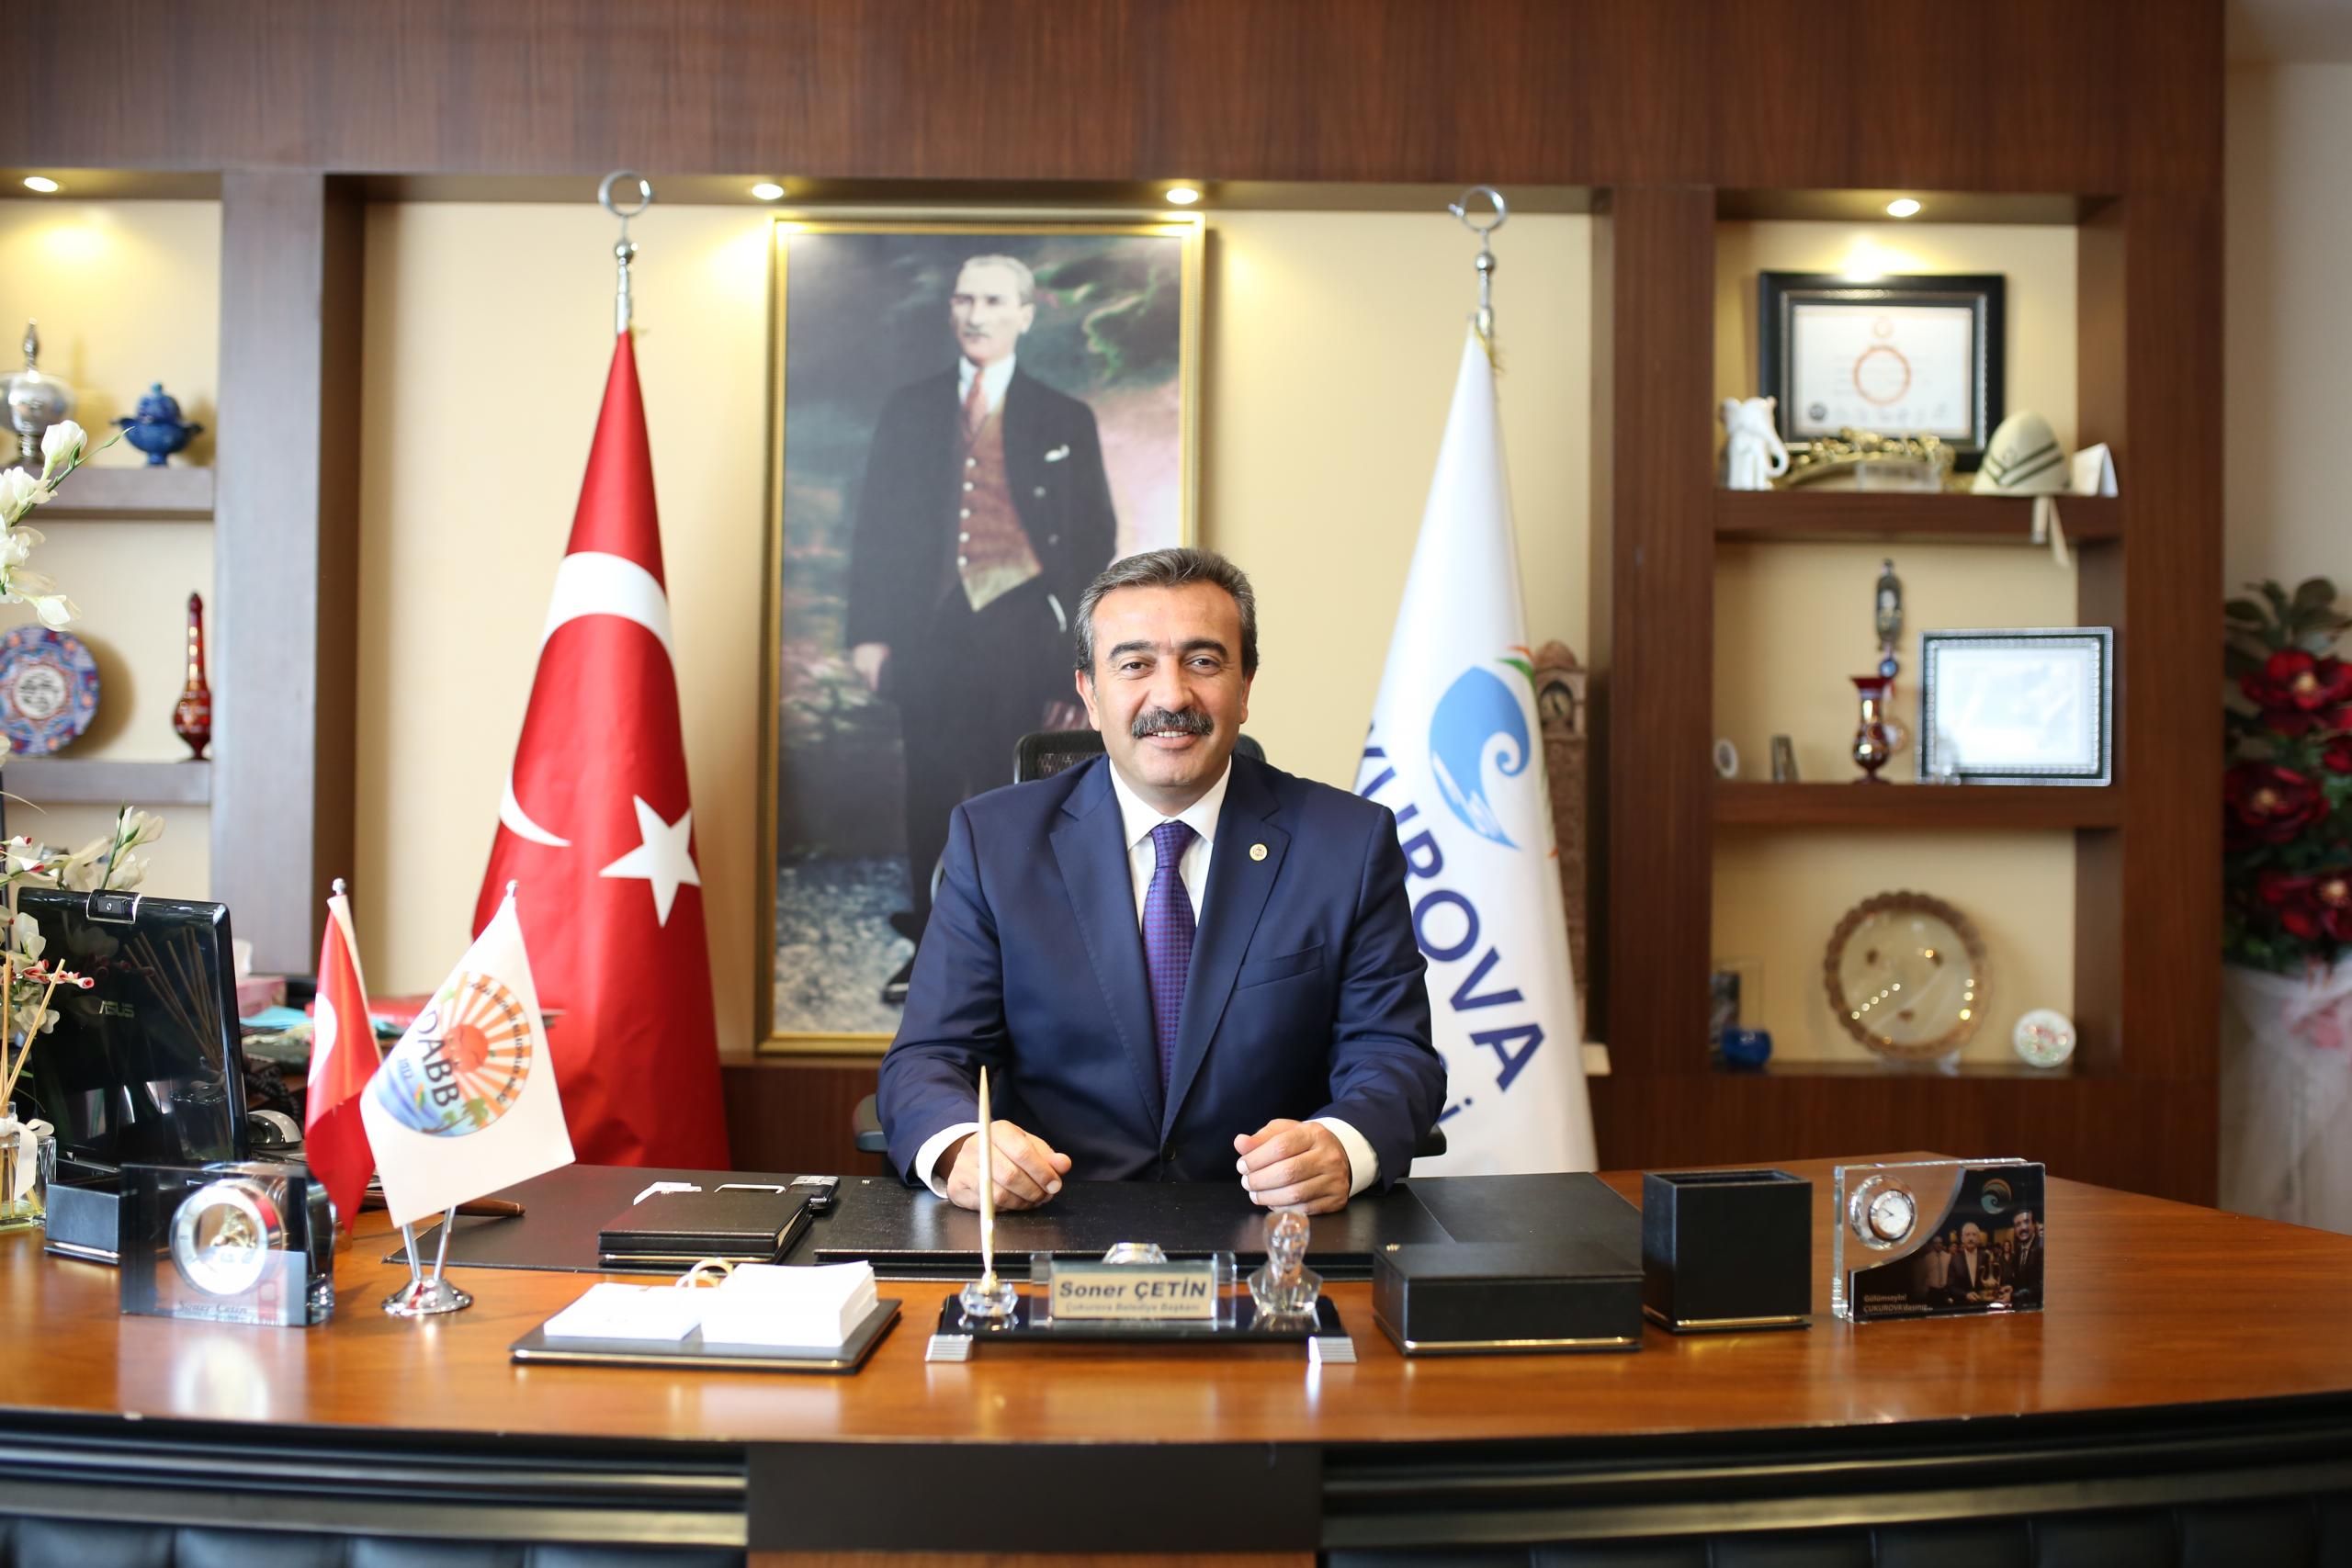 Adana Atatürk’e bağımsızlık ilhamını veren şehirdir